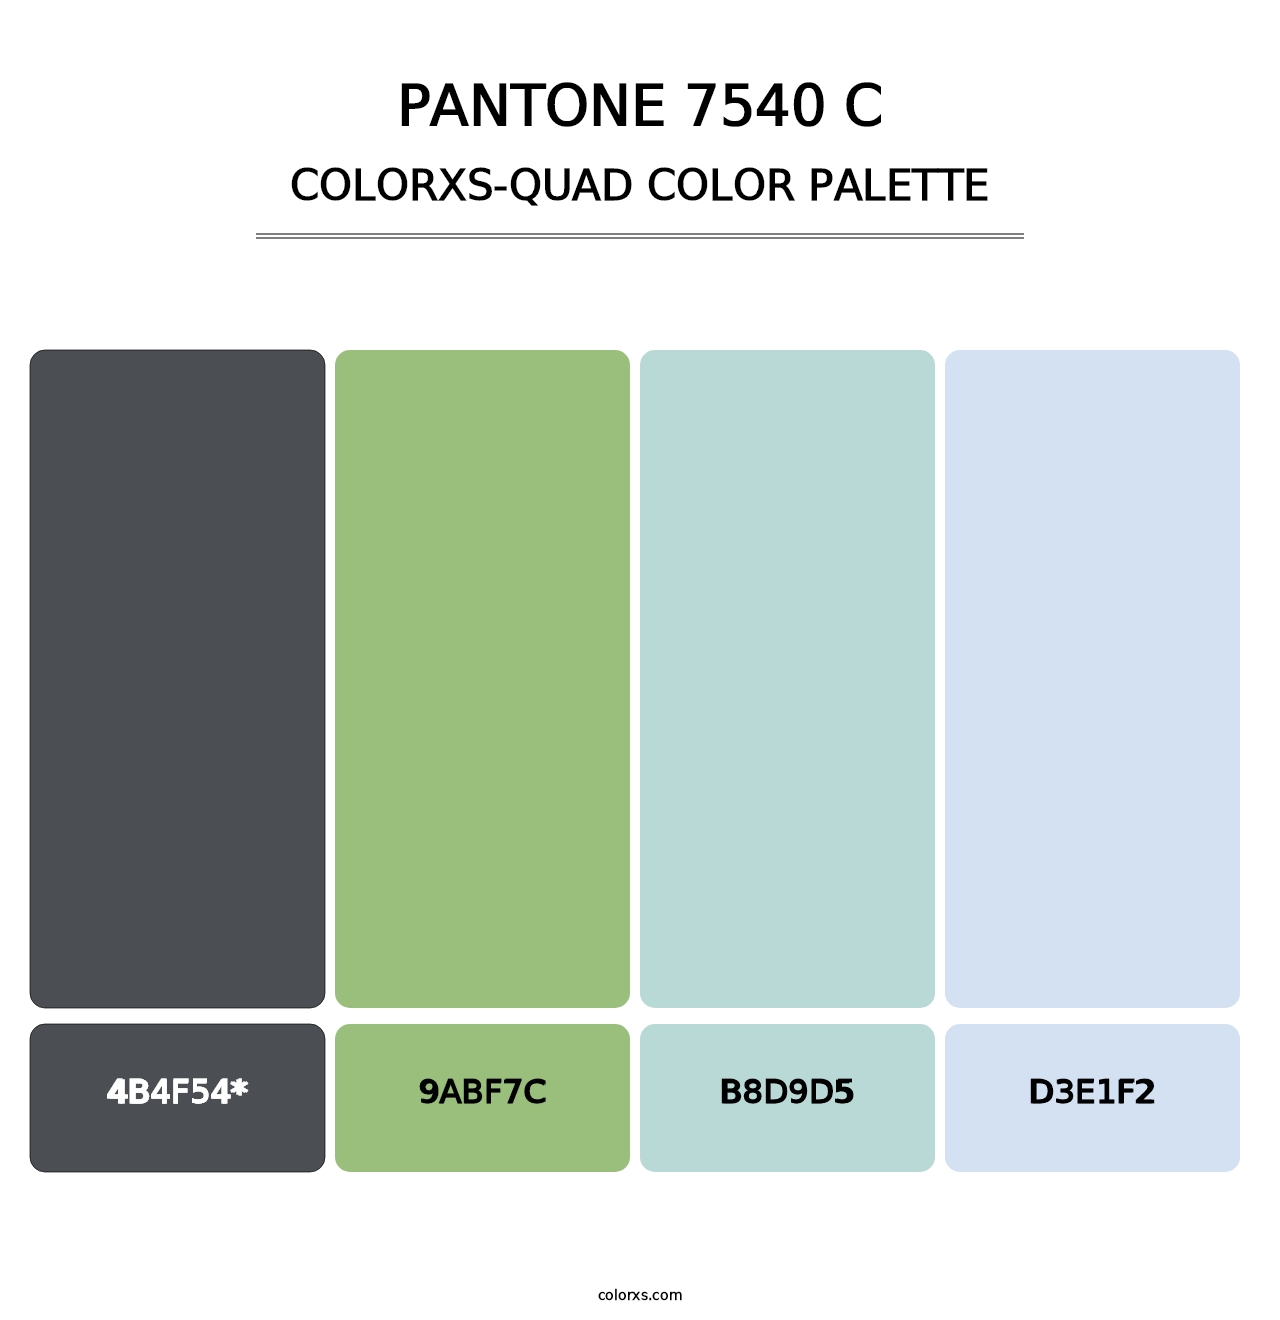 PANTONE 7540 C - Colorxs Quad Palette